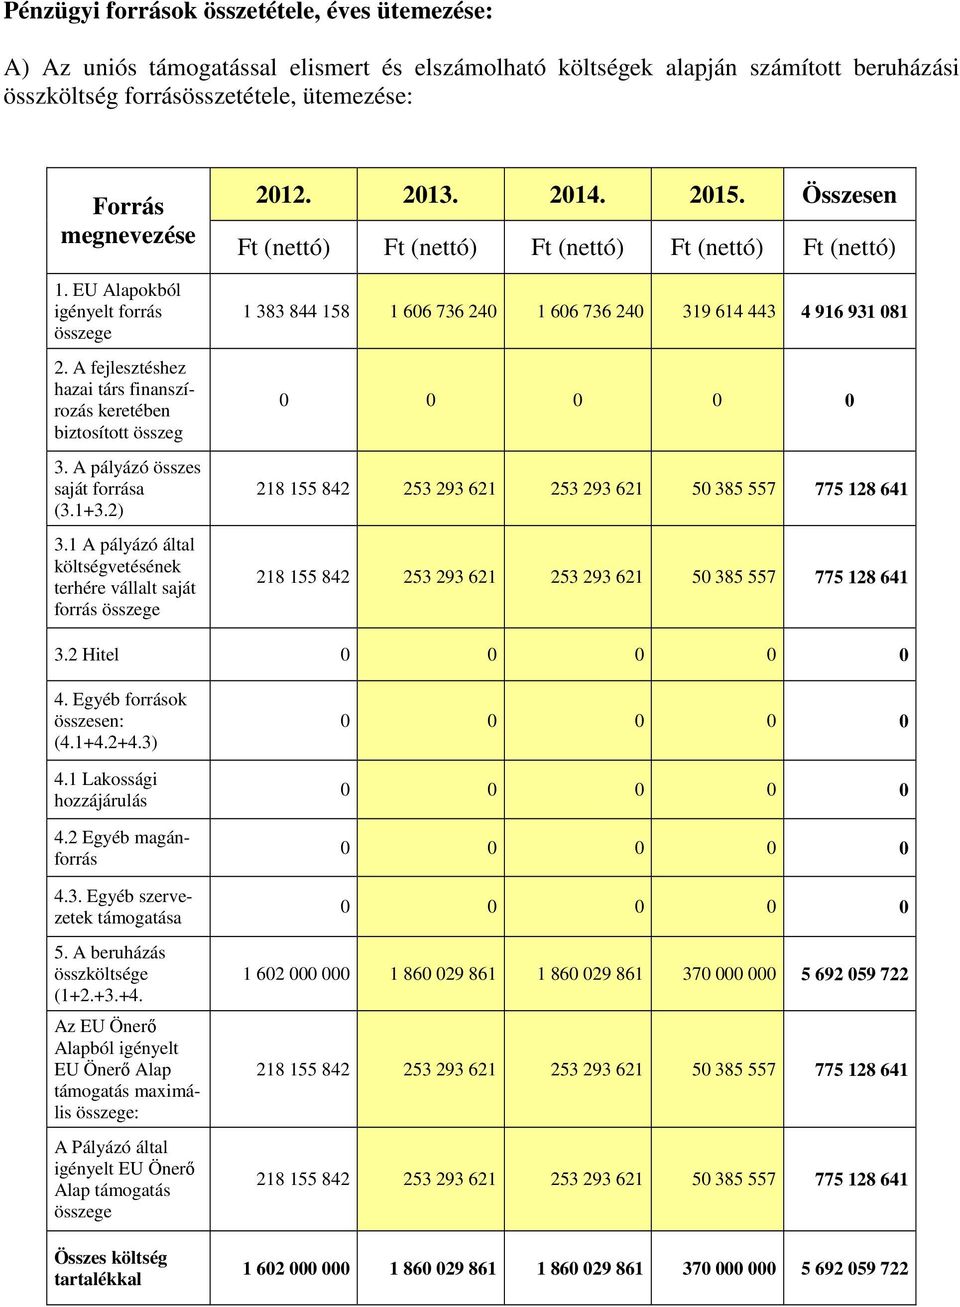 1 A pályázó által költségvetésének terhére vállalt saját forrás összege 2012. 2013. 2014. 2015.